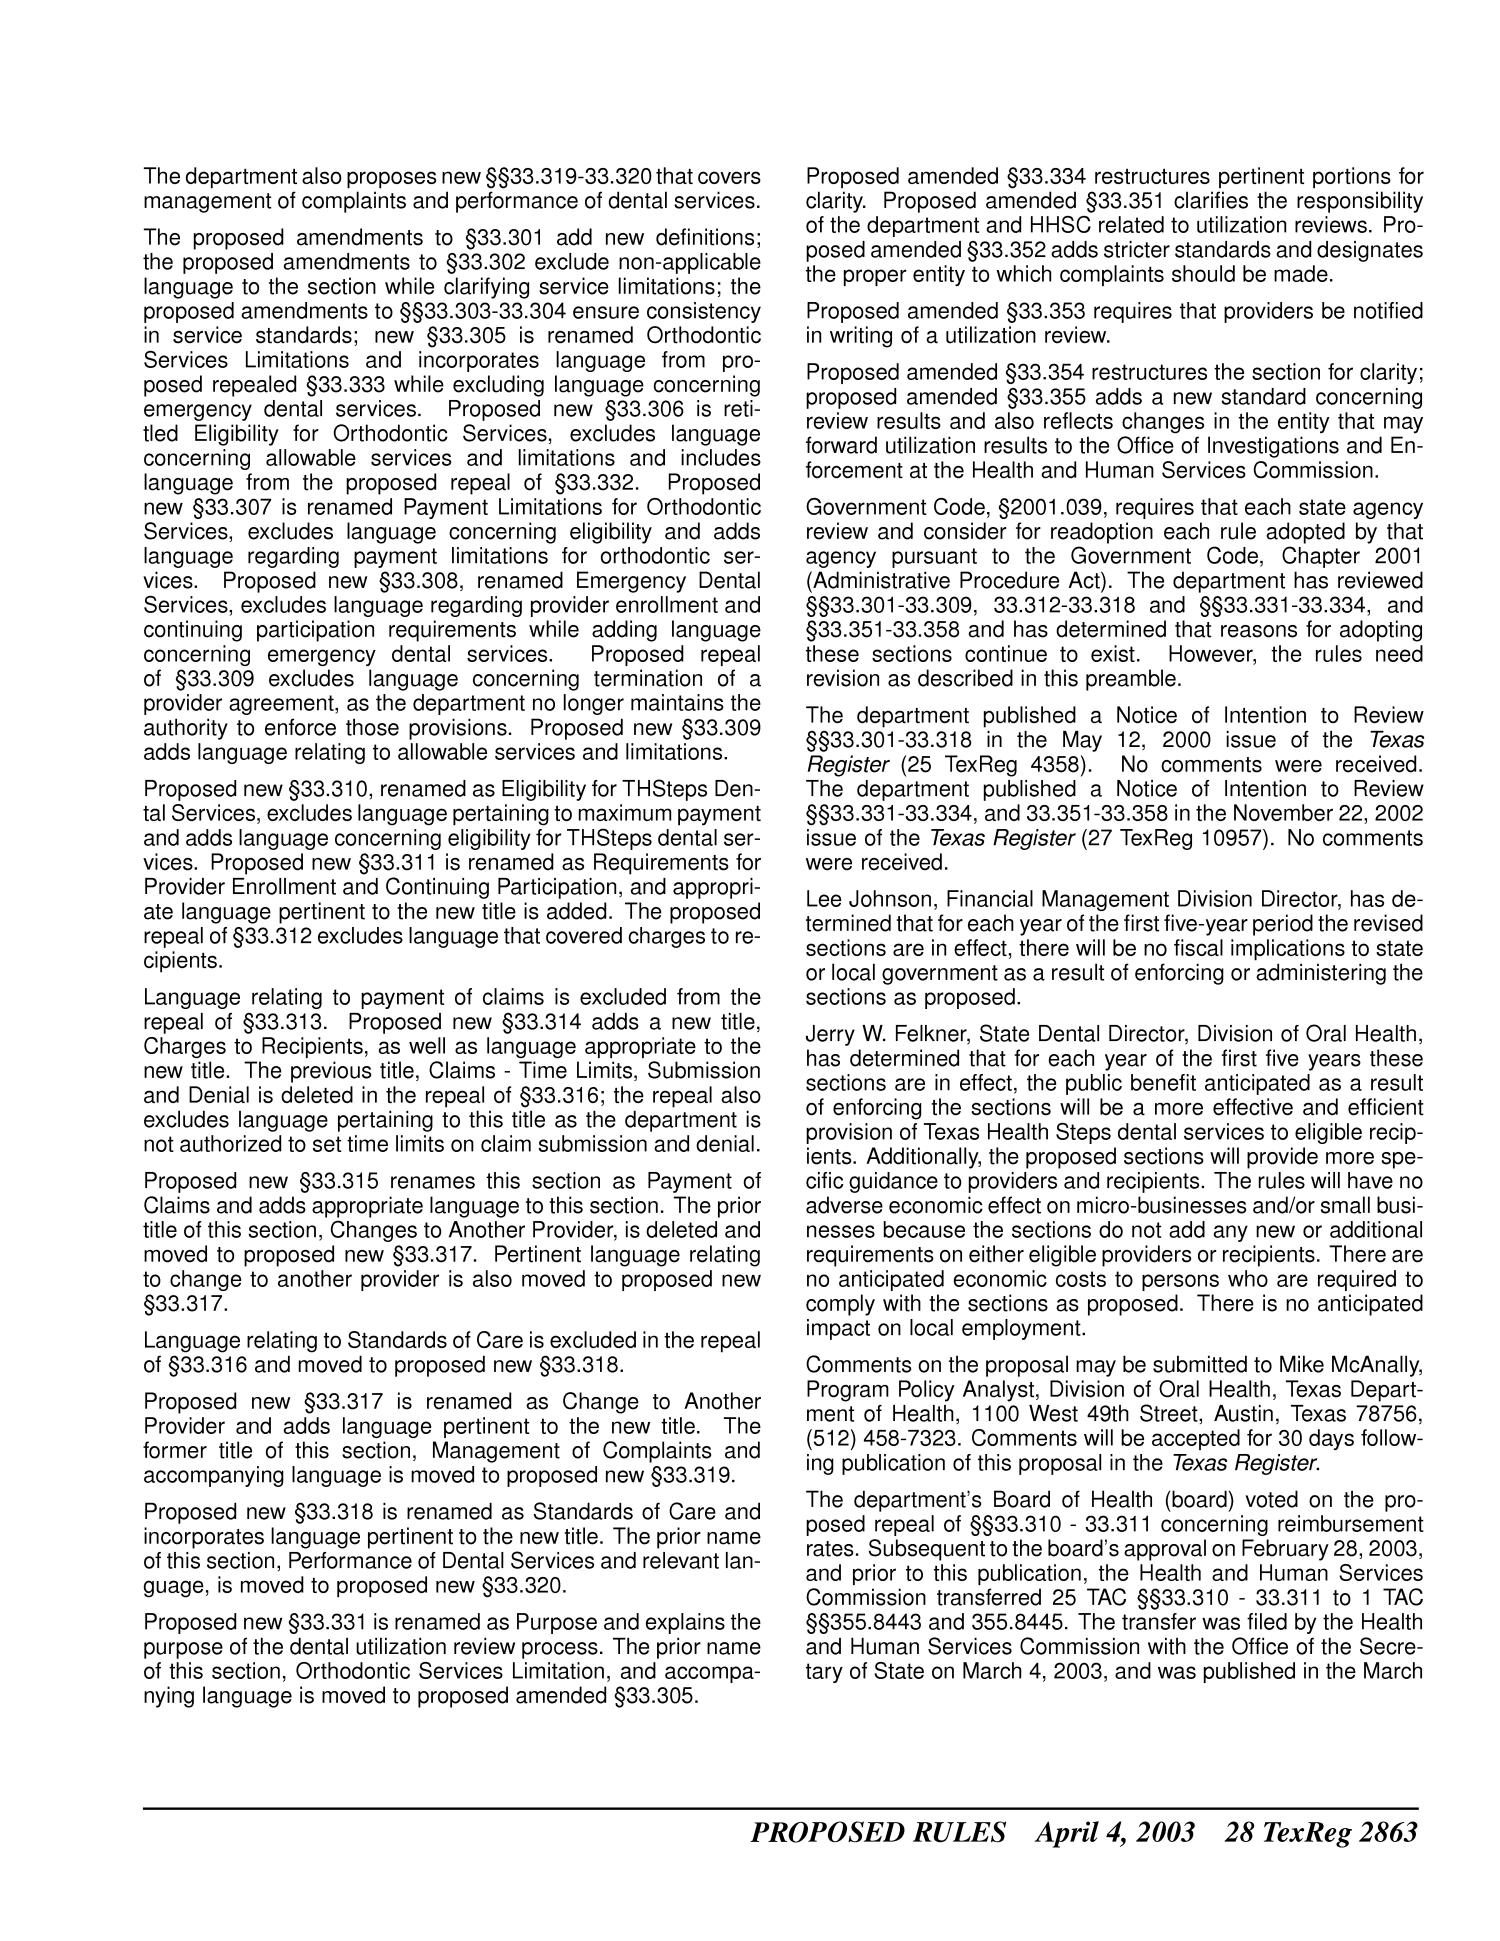 Texas Register, Volume 28, Number 14, Pages 2821-2988, April 4, 2003
                                                
                                                    2863
                                                